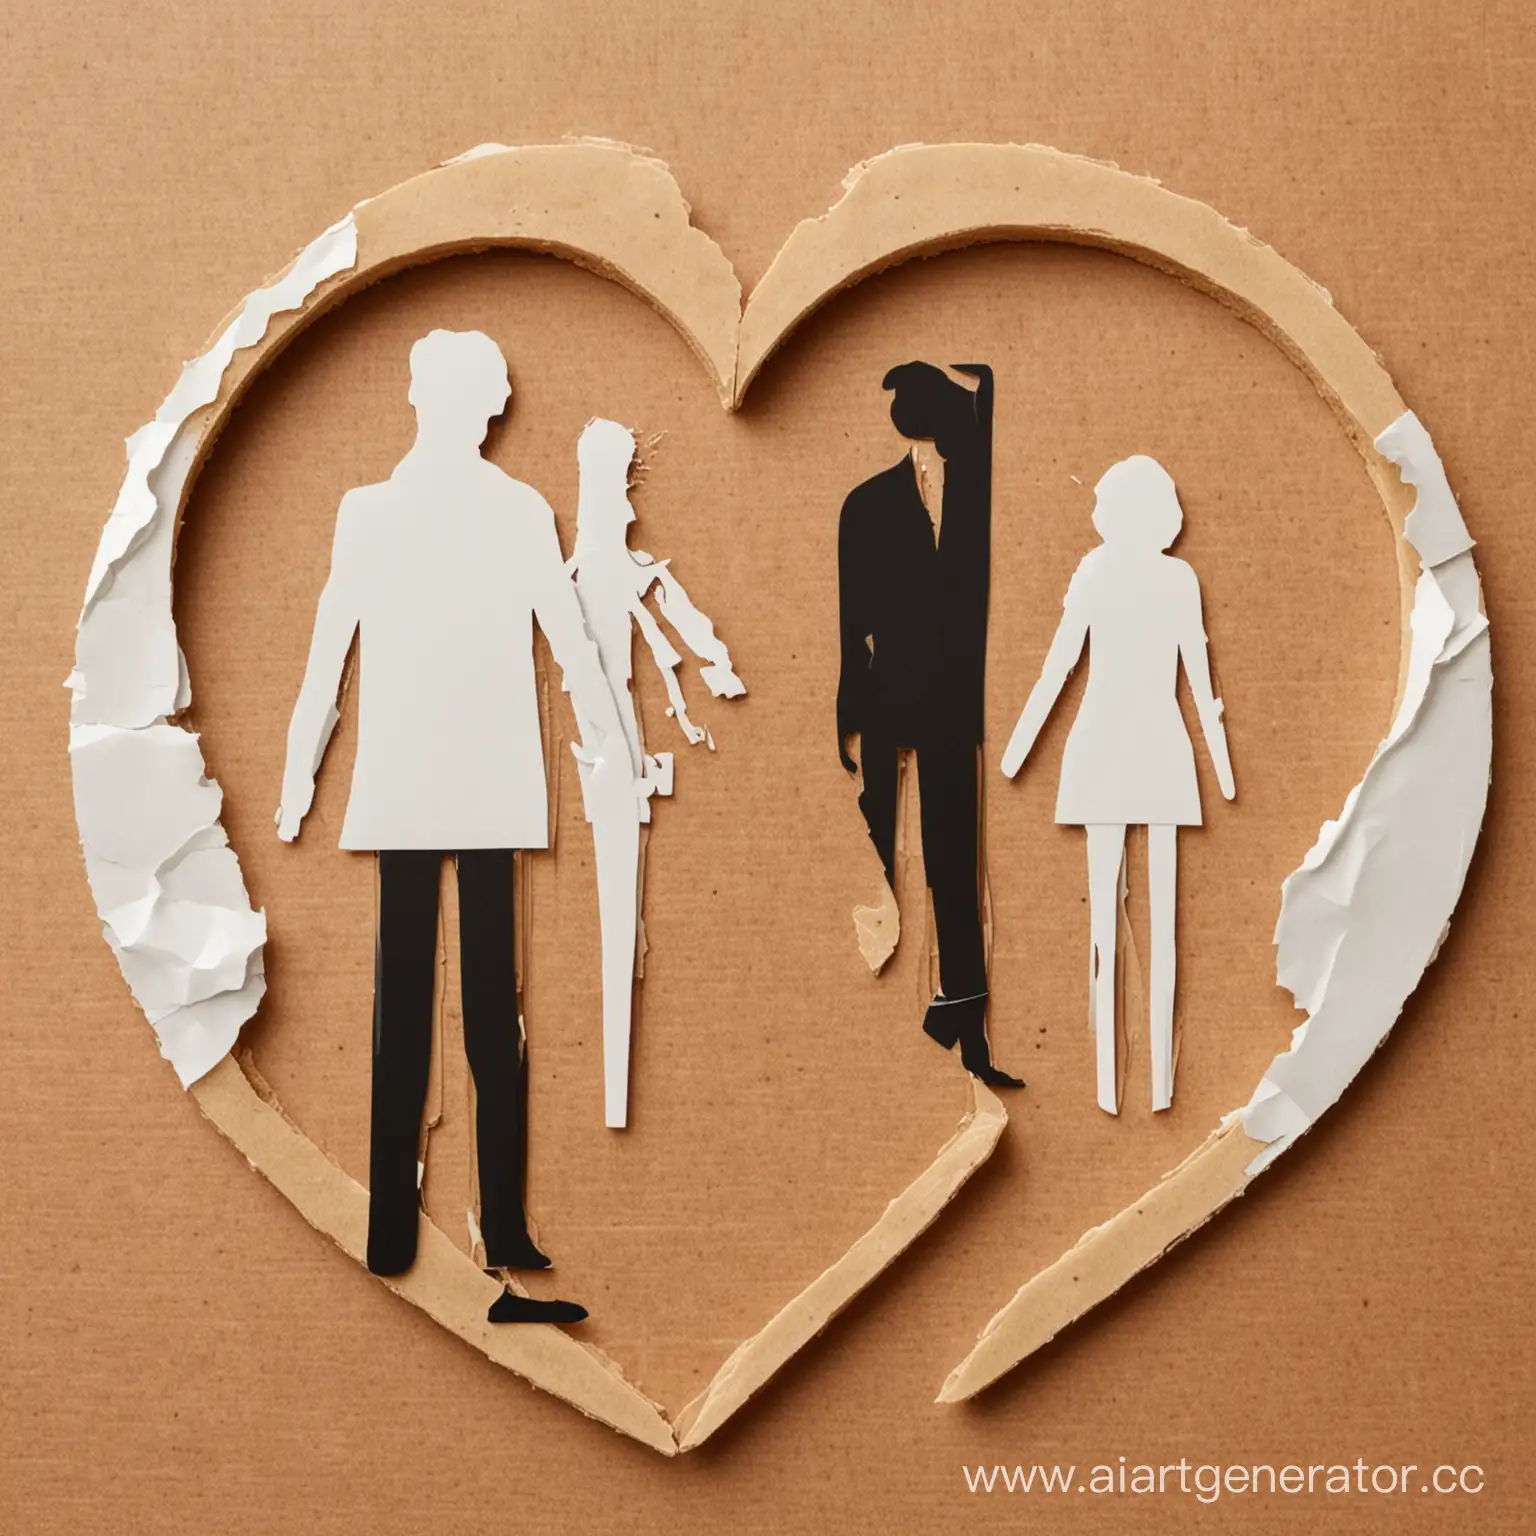 Развод крайне отрицательно сказывается на здоровье